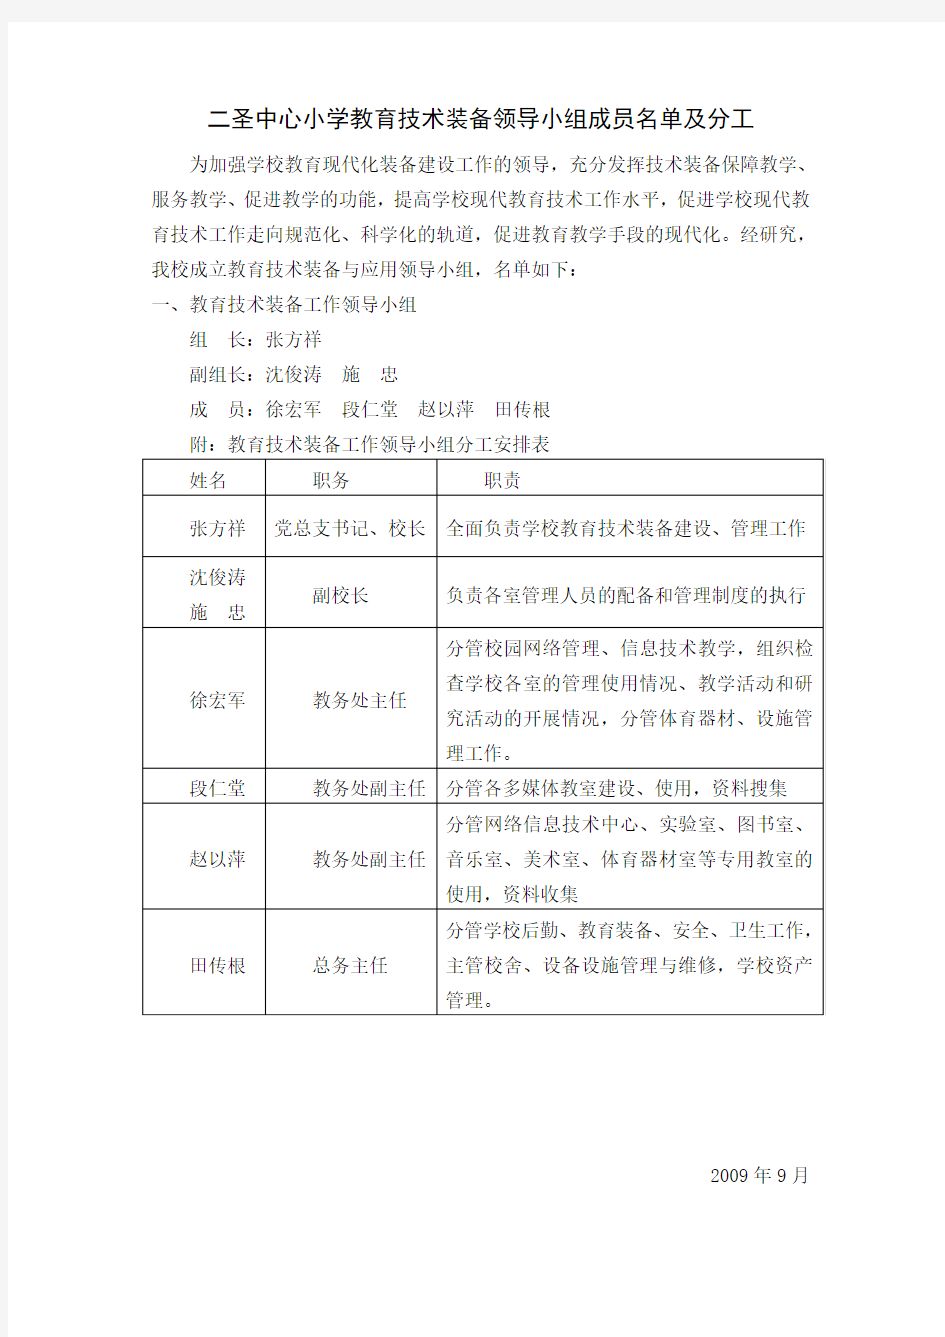 江阴市祝塘中学教育技术装备领导小组成员名单及分工